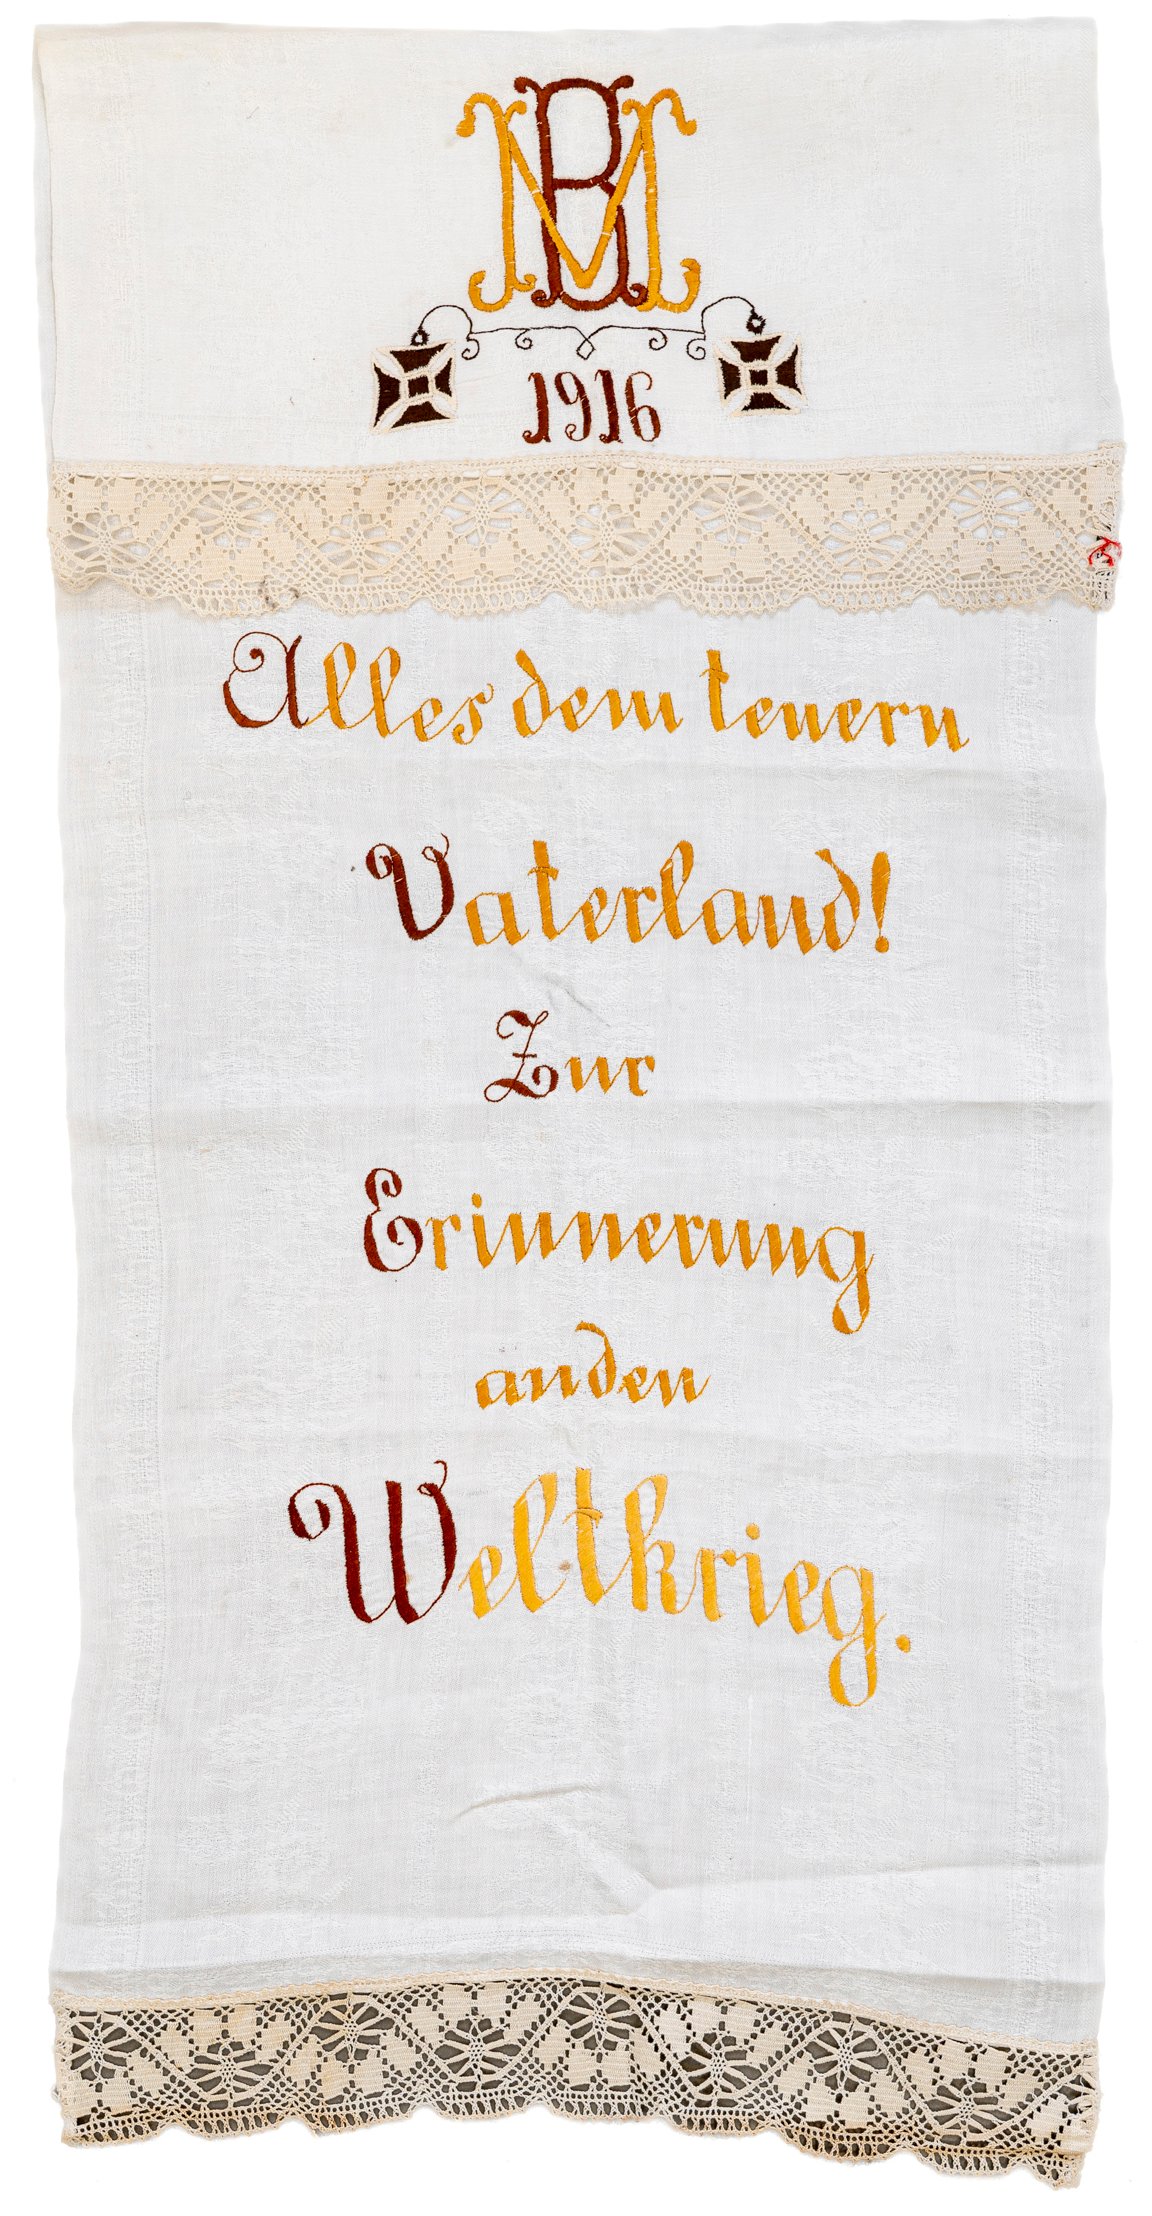 Spruchtuch: Alles dem teuern Vaterland! Zur Erinnerung an den Weltkrieg (Museum Abtei Liesborn des Kreises Warendorf CC BY-NC-SA)